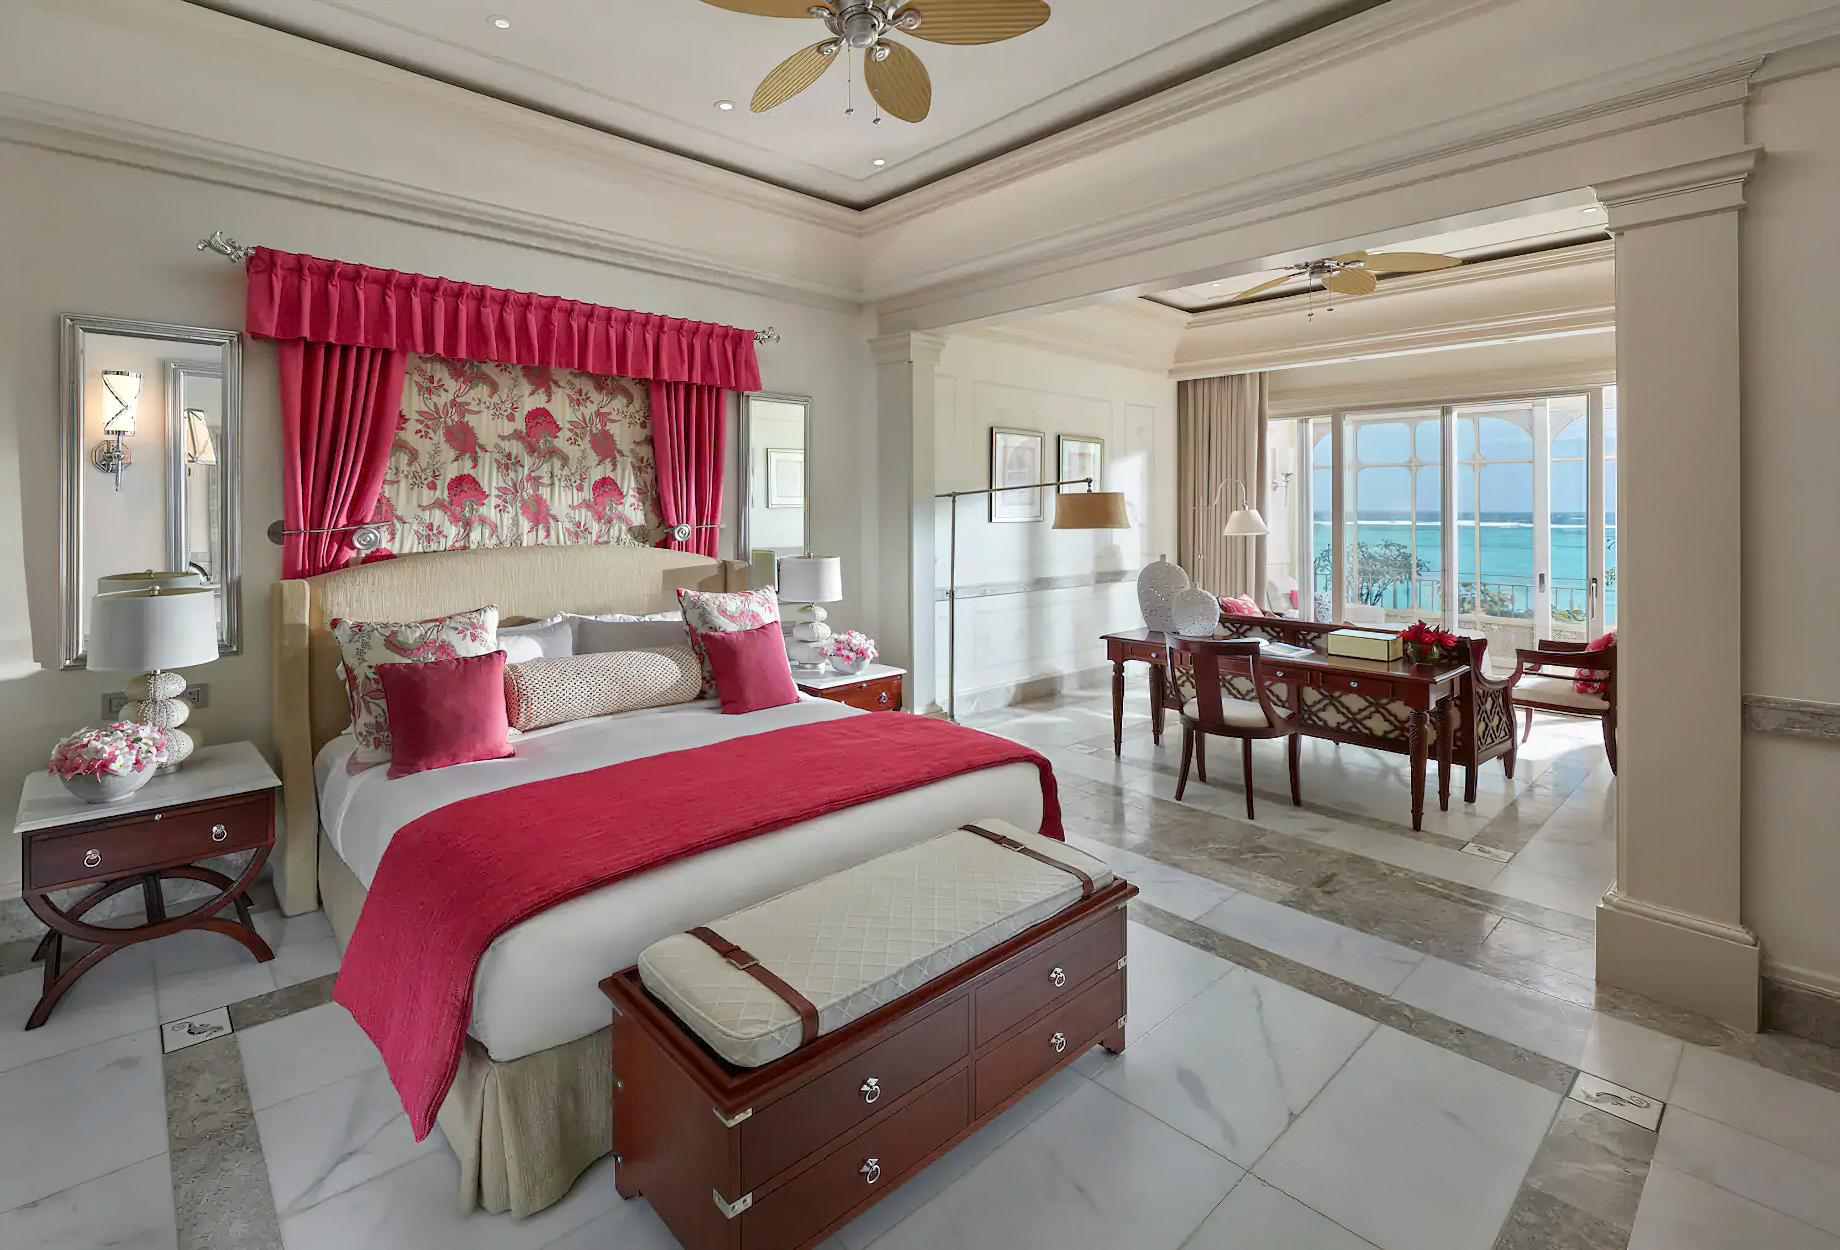 Mandarin Oriental, Canouan Island Resort – Saint Vincent and the Grenadines – Two Bedroom Oceanview Suite Bedroom